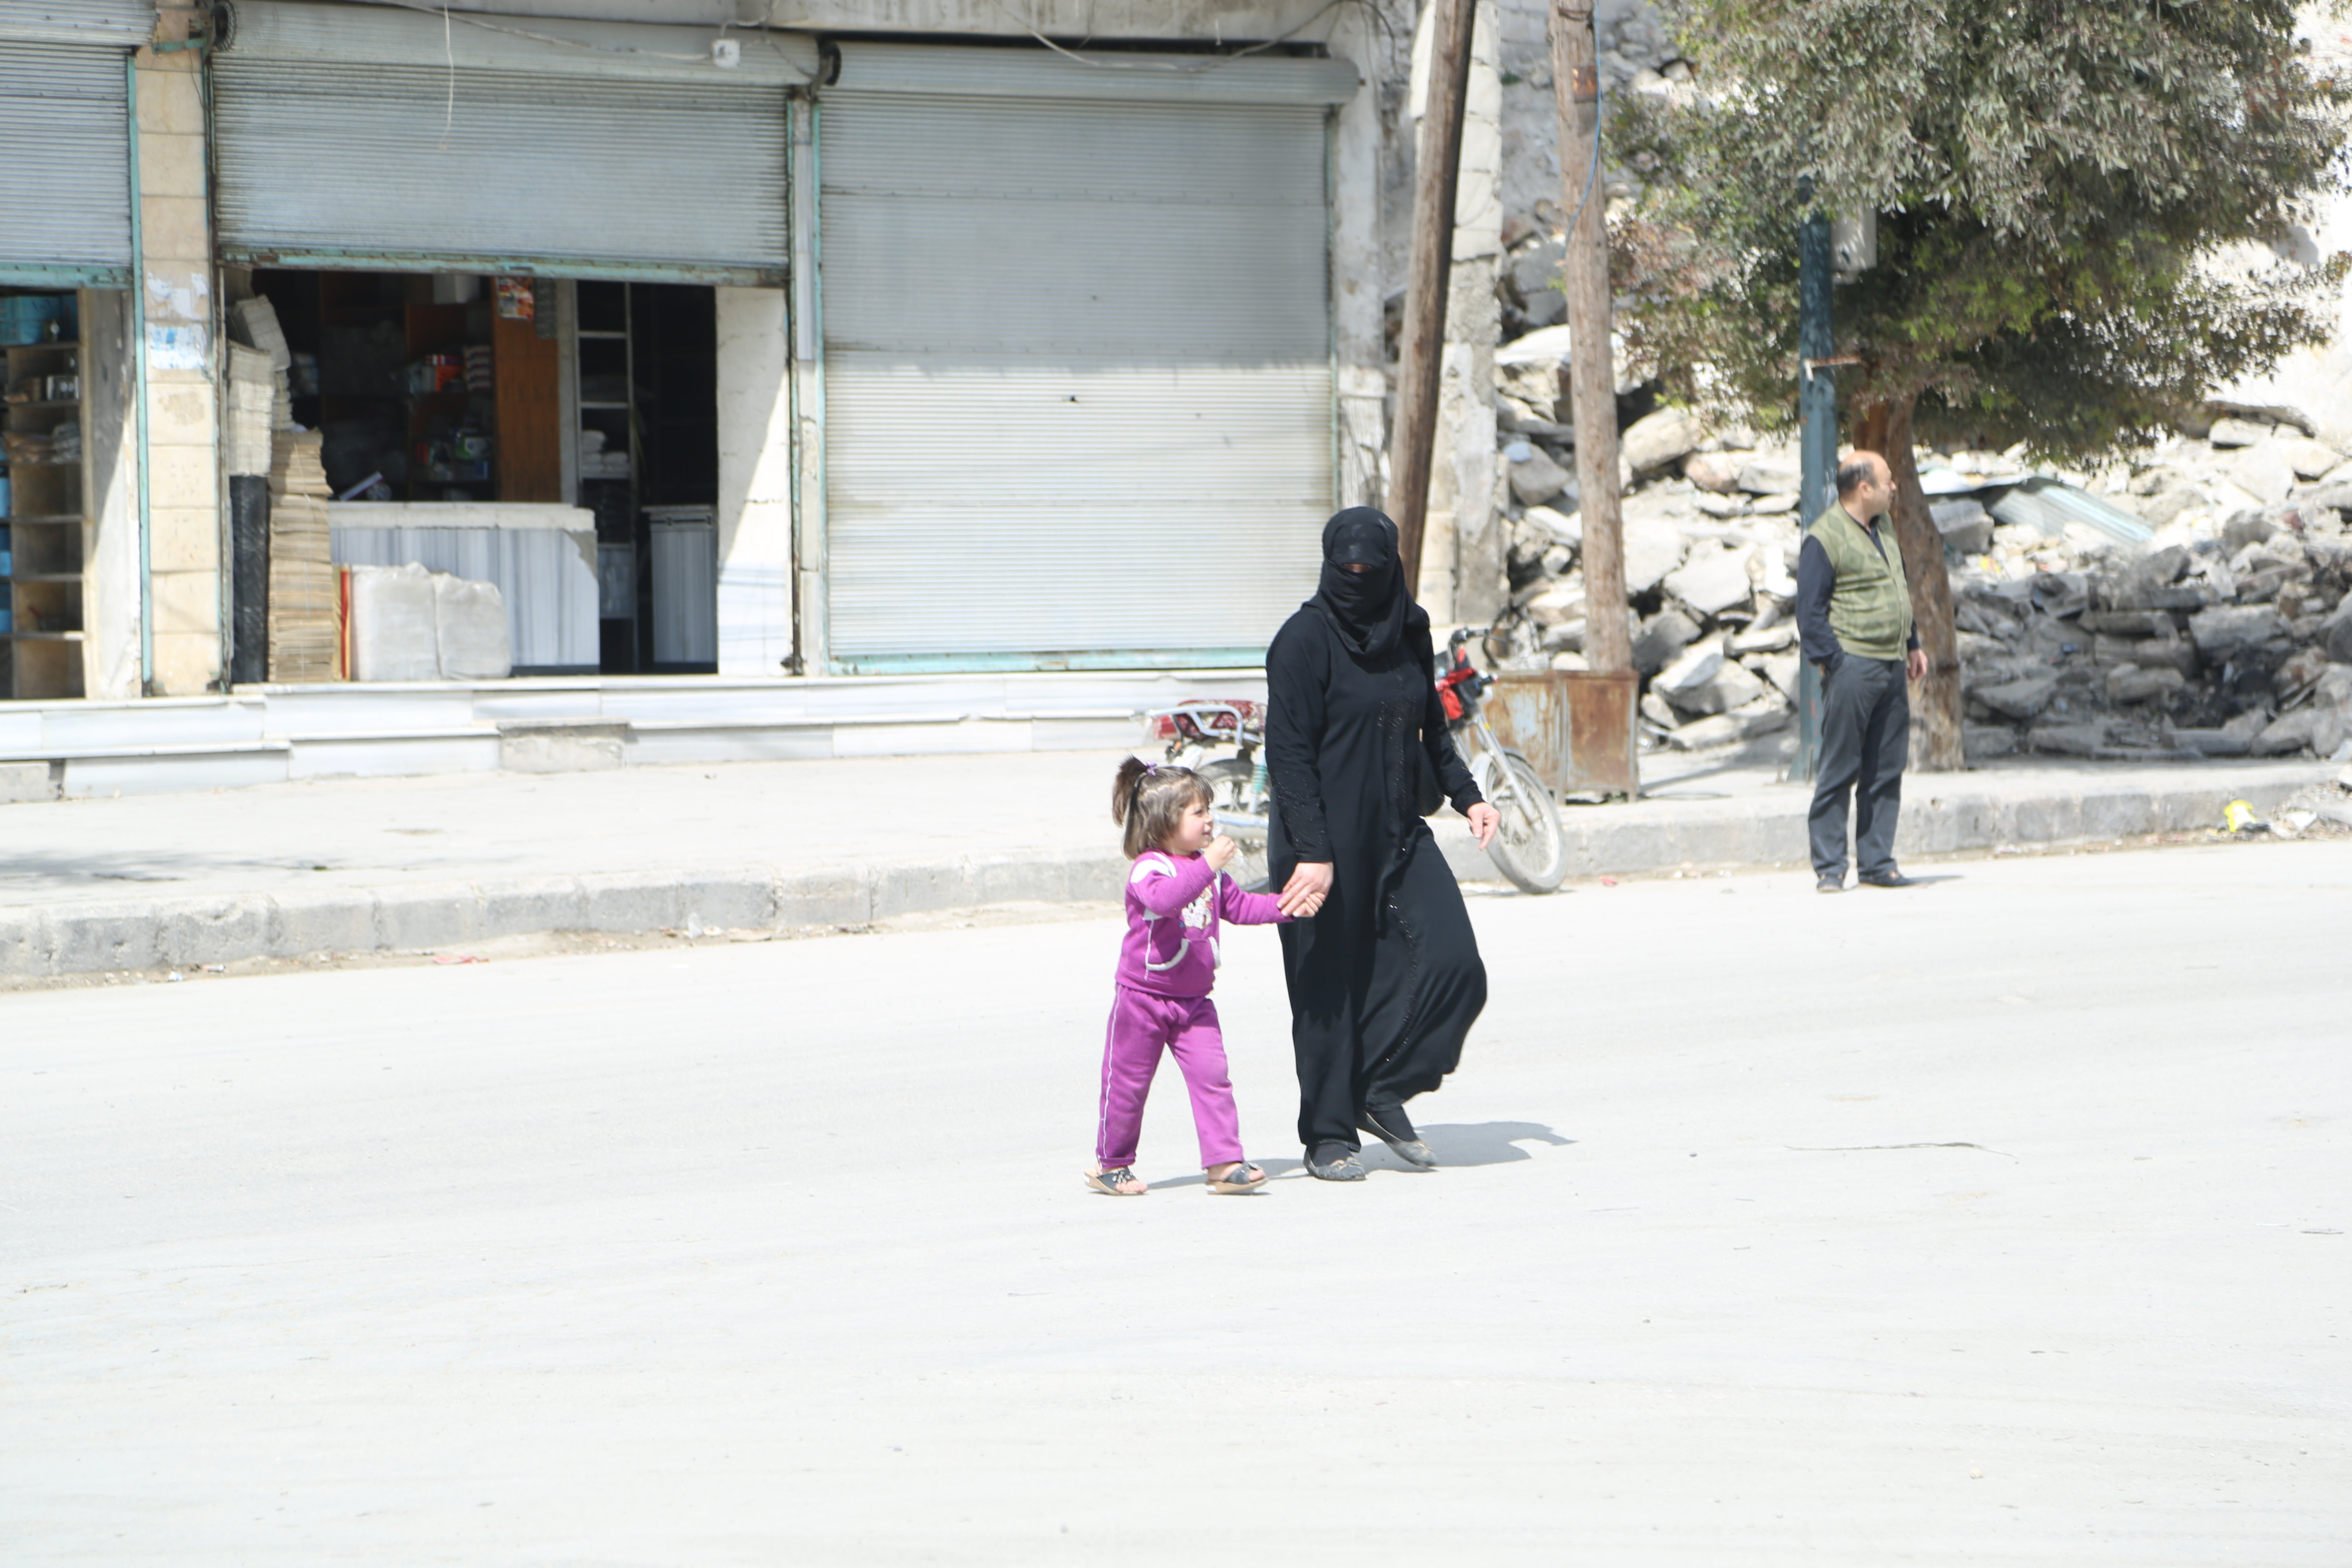 سيدة وطفلتها تقطع الشارع أمام مبنى مهدم في حي المرجة في حلب. تصوير حسام كويفاتية